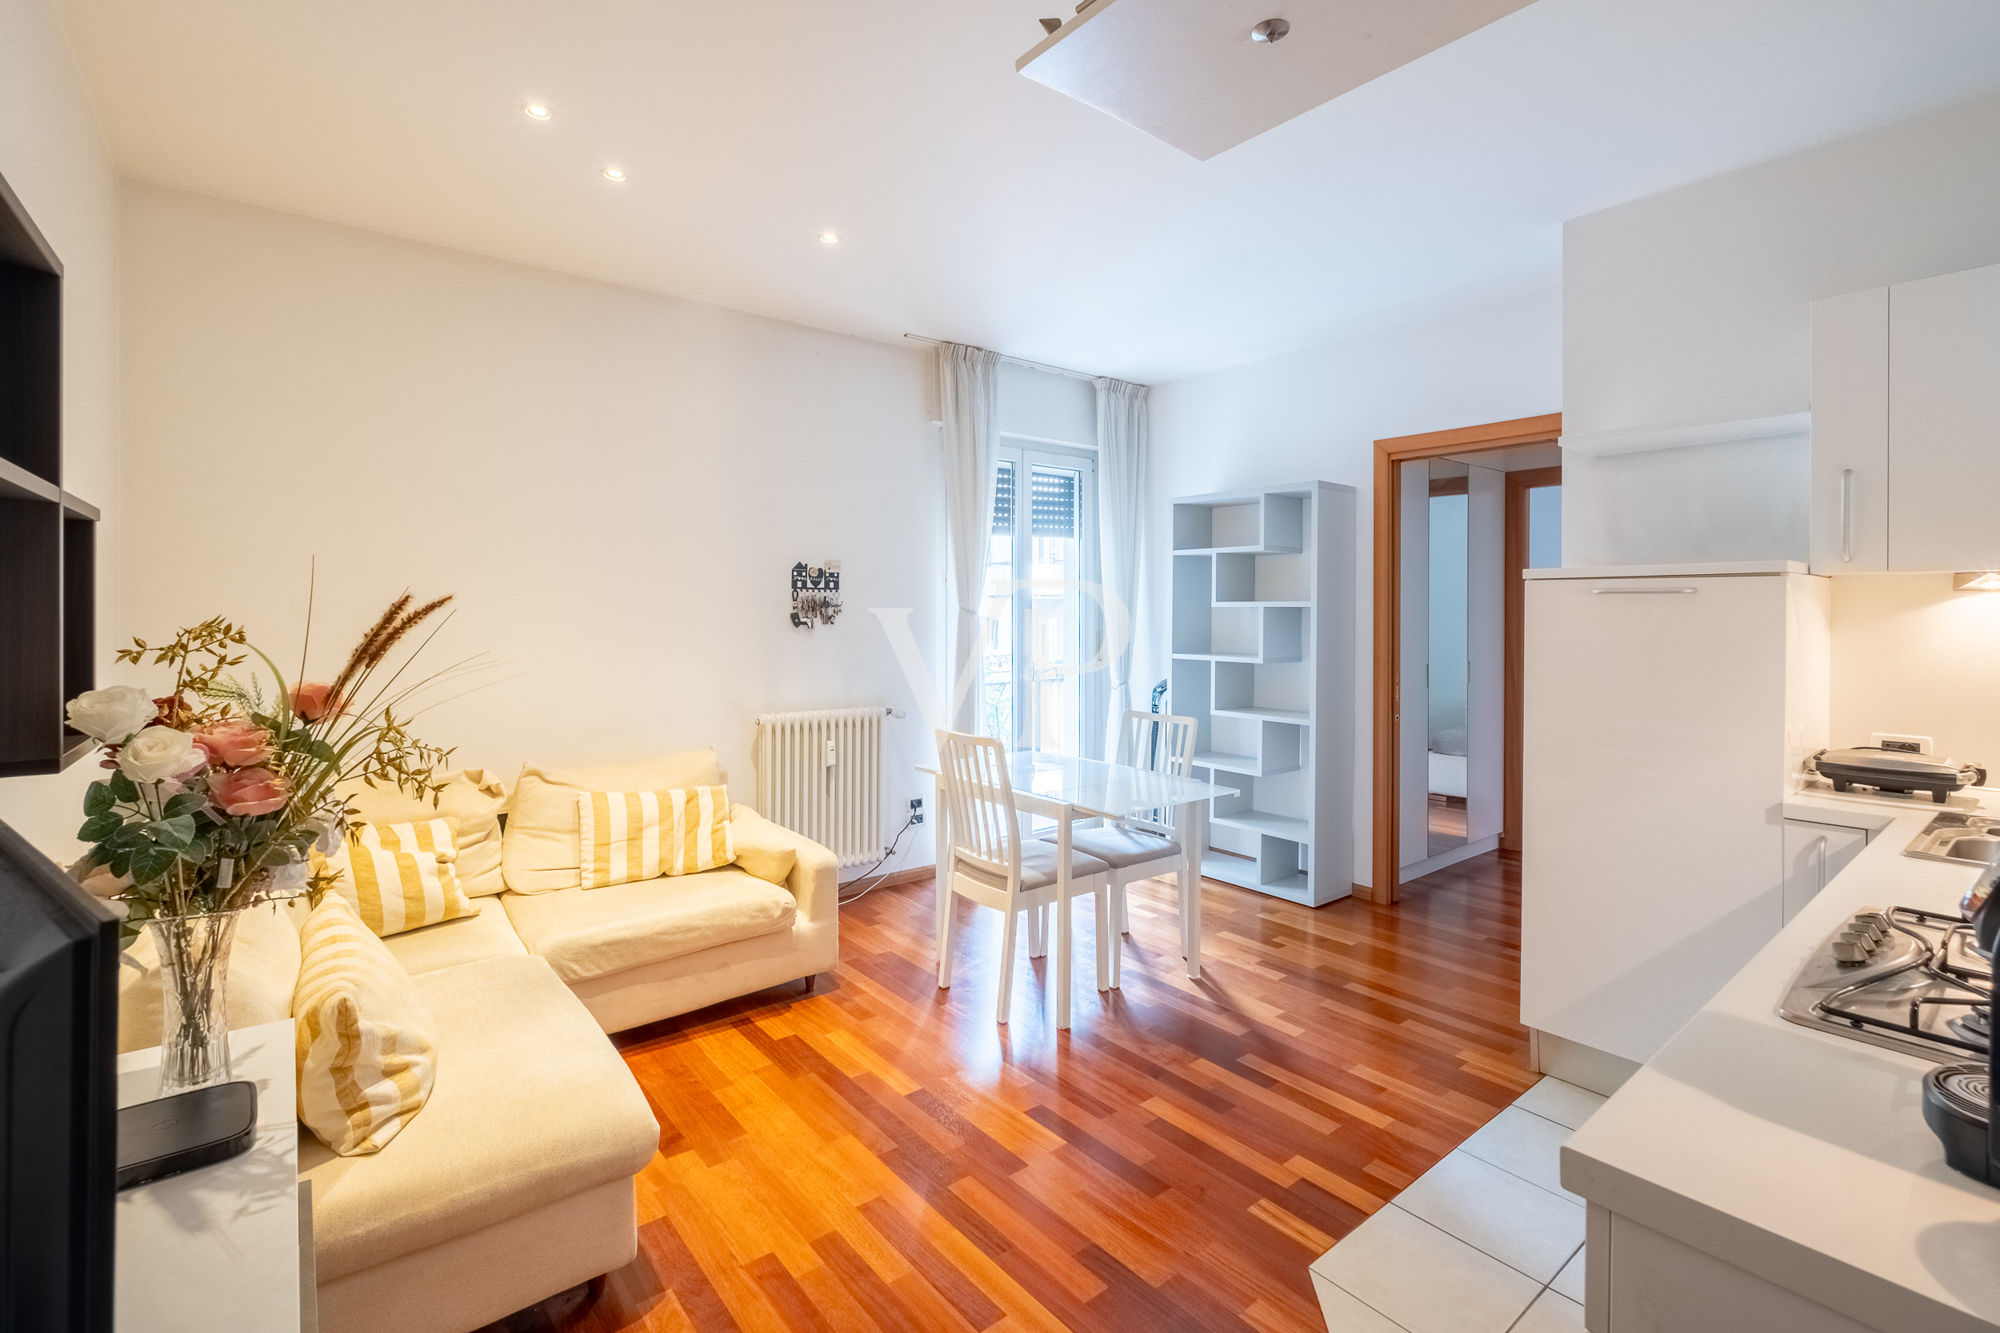 Zwei-Zimmer-Wohnung ideal für Investitionen in gut bedienter Lage